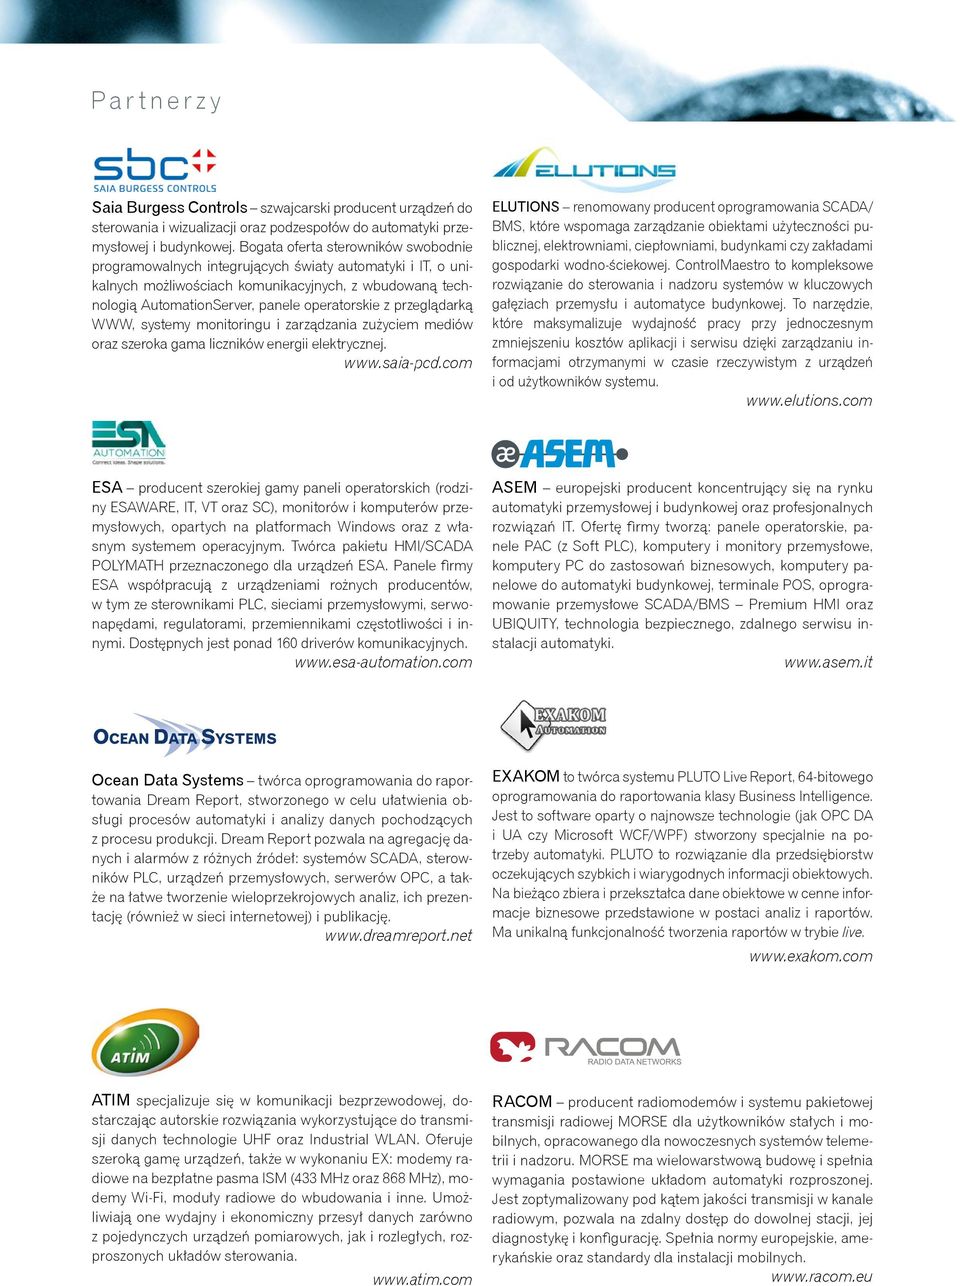 przeglądarką WWW, systemy monitoringu i zarządzania zużyciem mediów oraz szeroka gama liczników energii elektrycznej. www.saia-pcd.